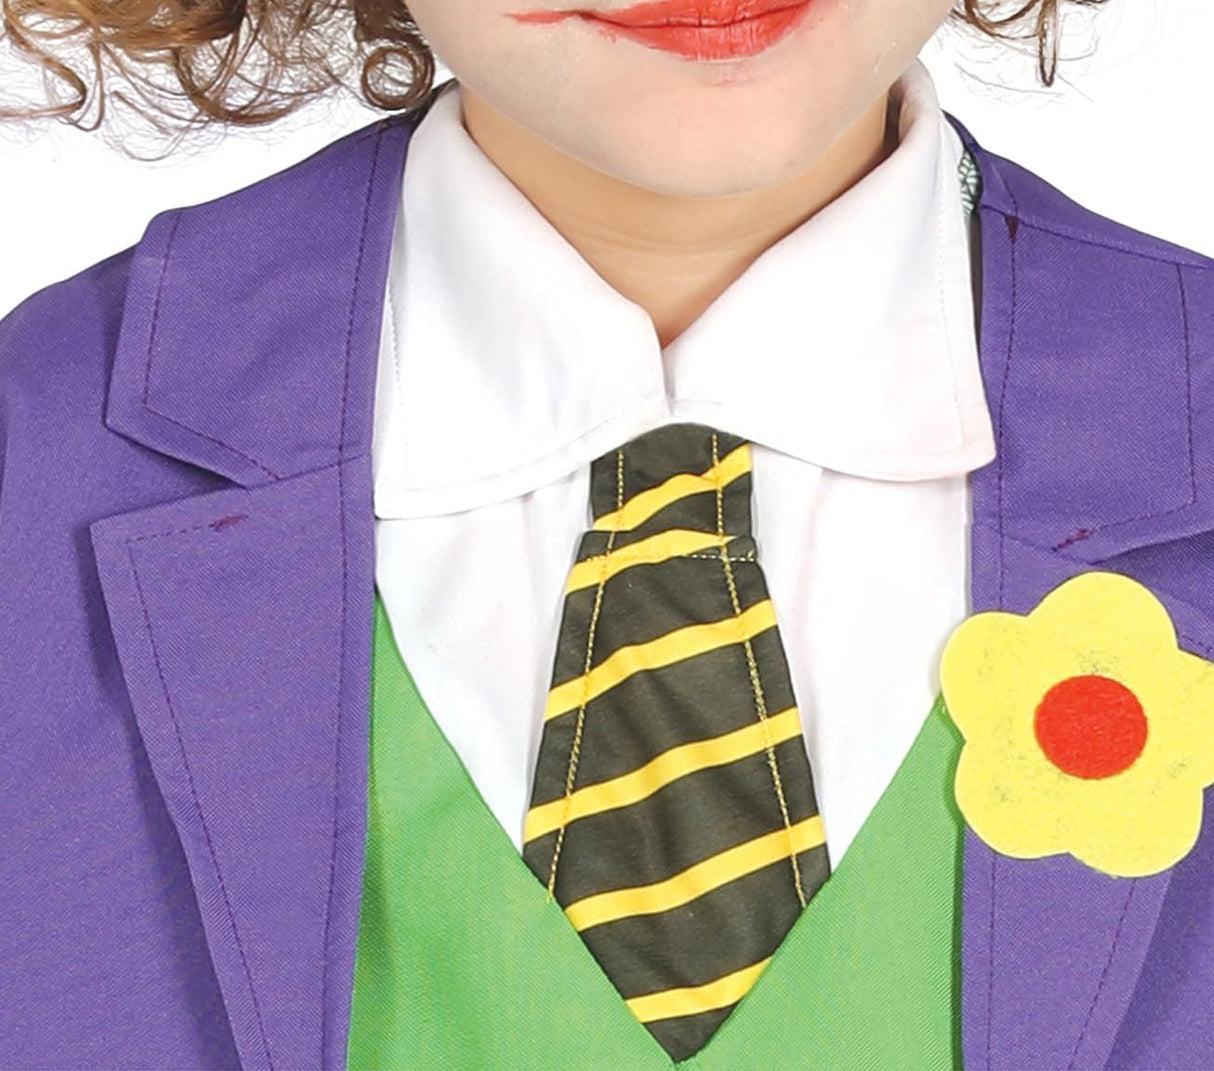 Child Crazy Joker Batman Inspired Costume - 7-9 Years